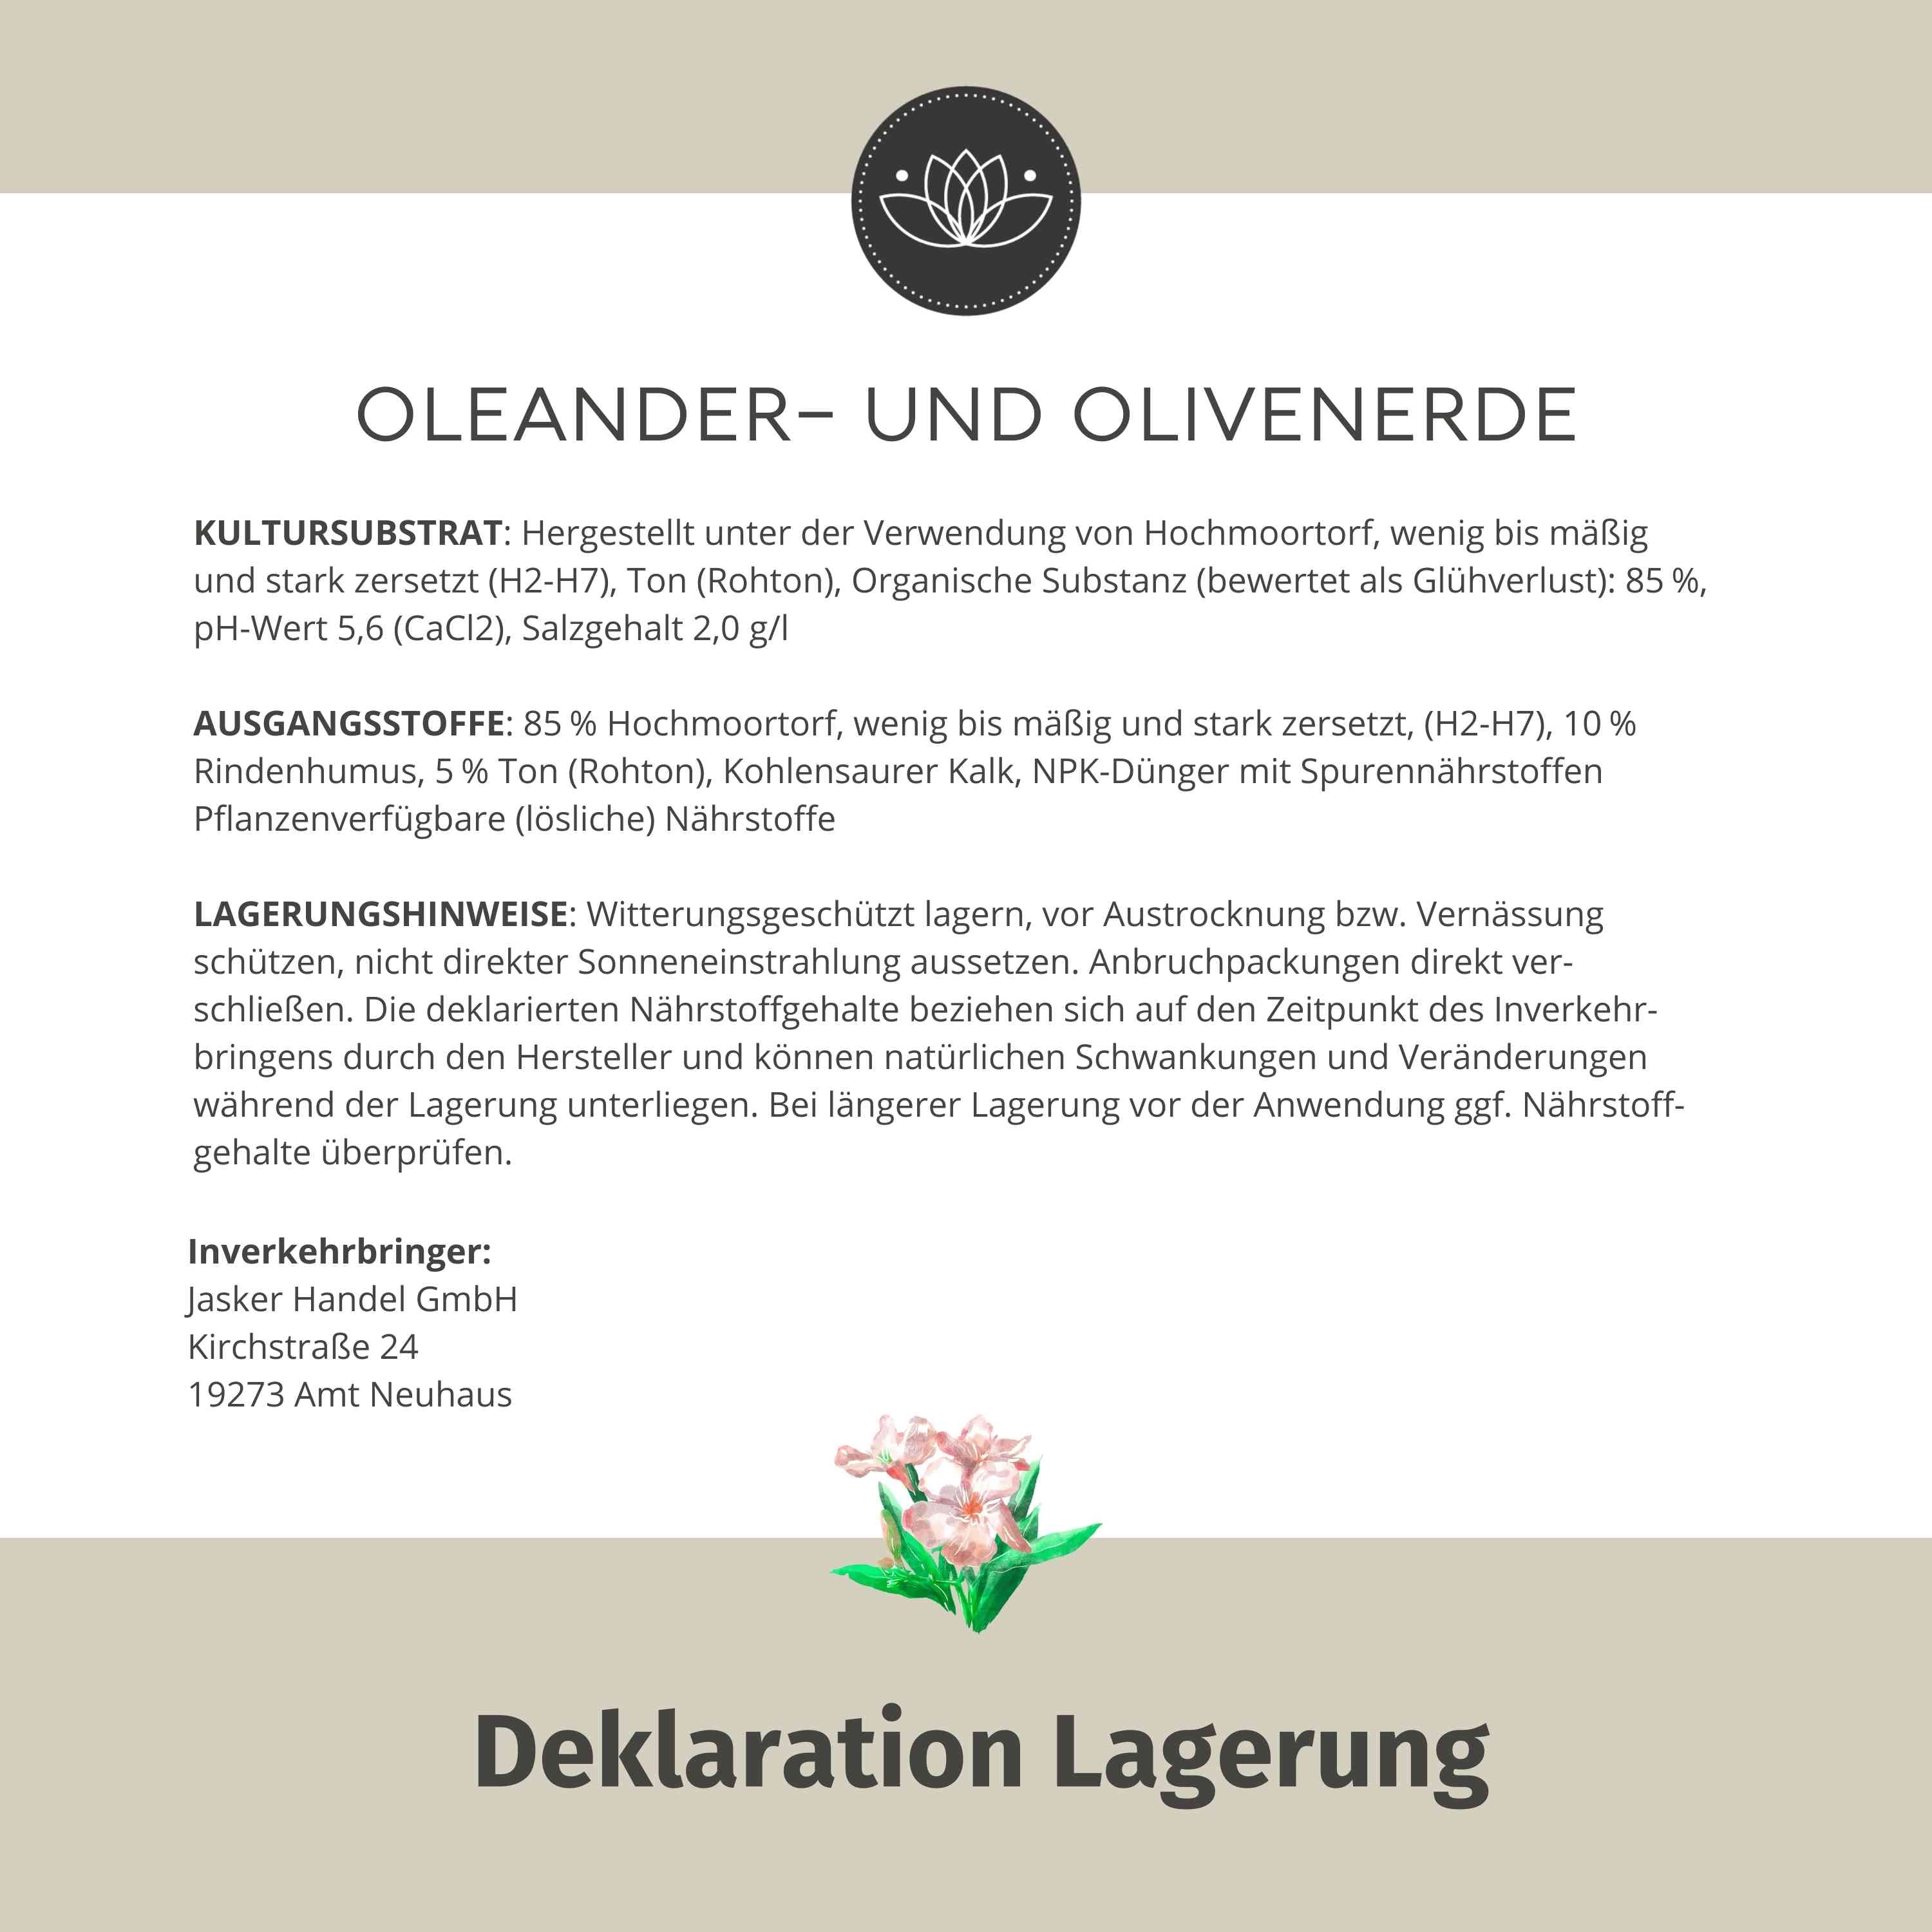 Oleander Erde